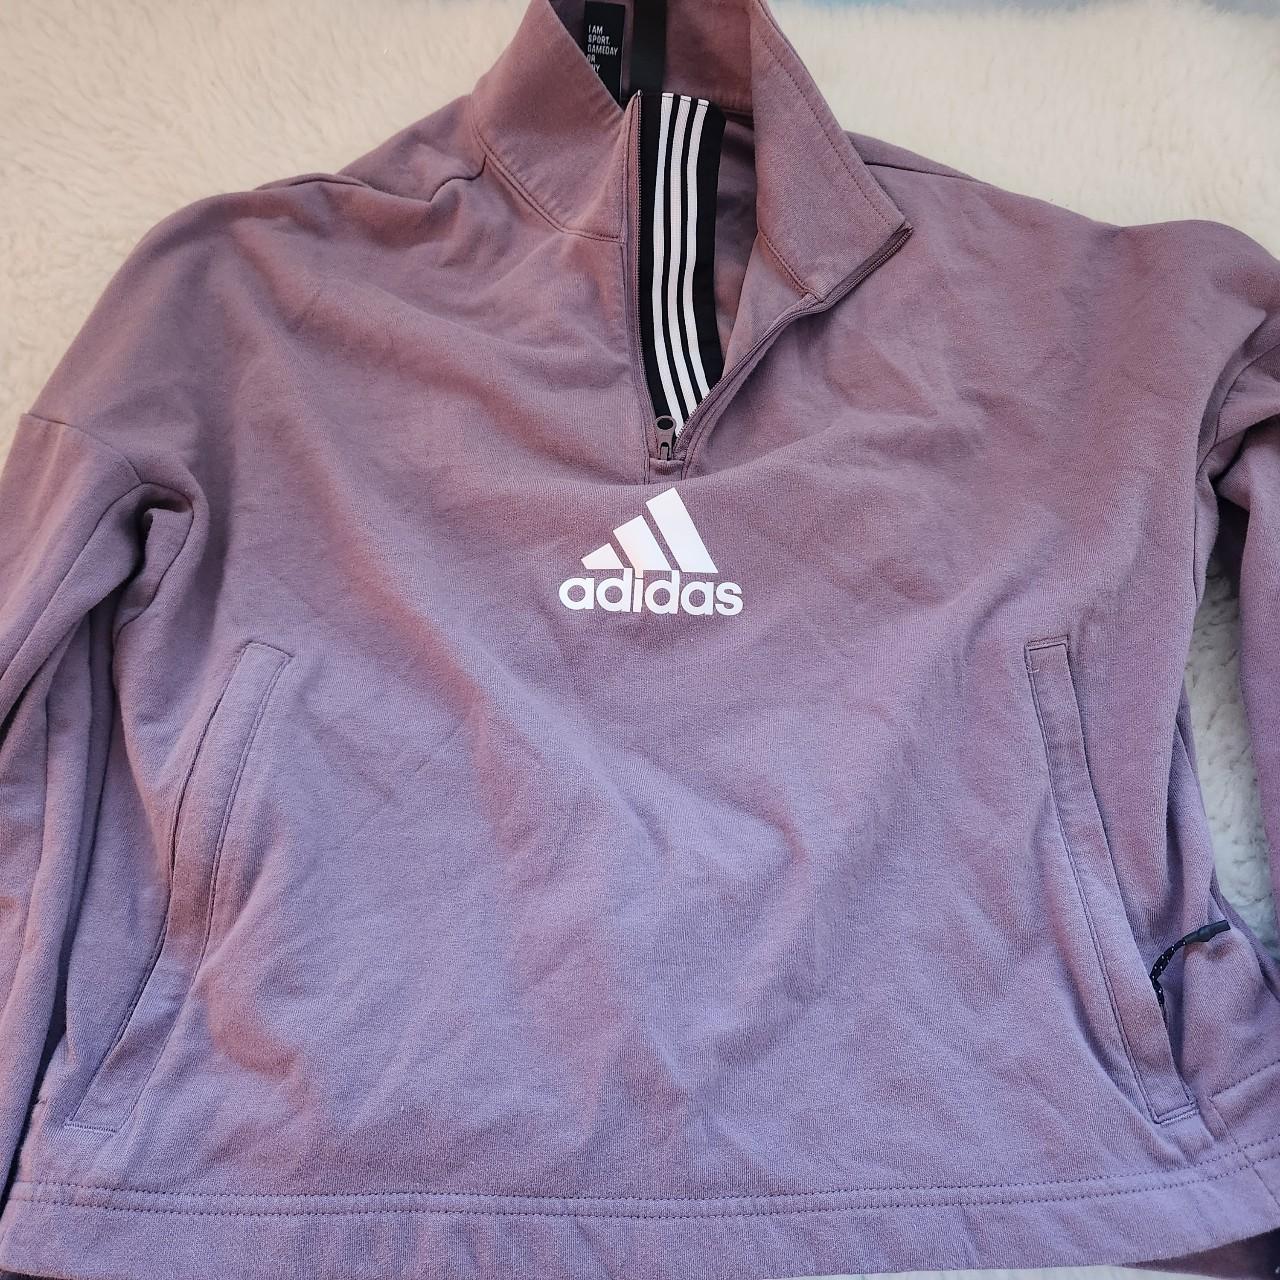 Purple Adidas jacket - Depop